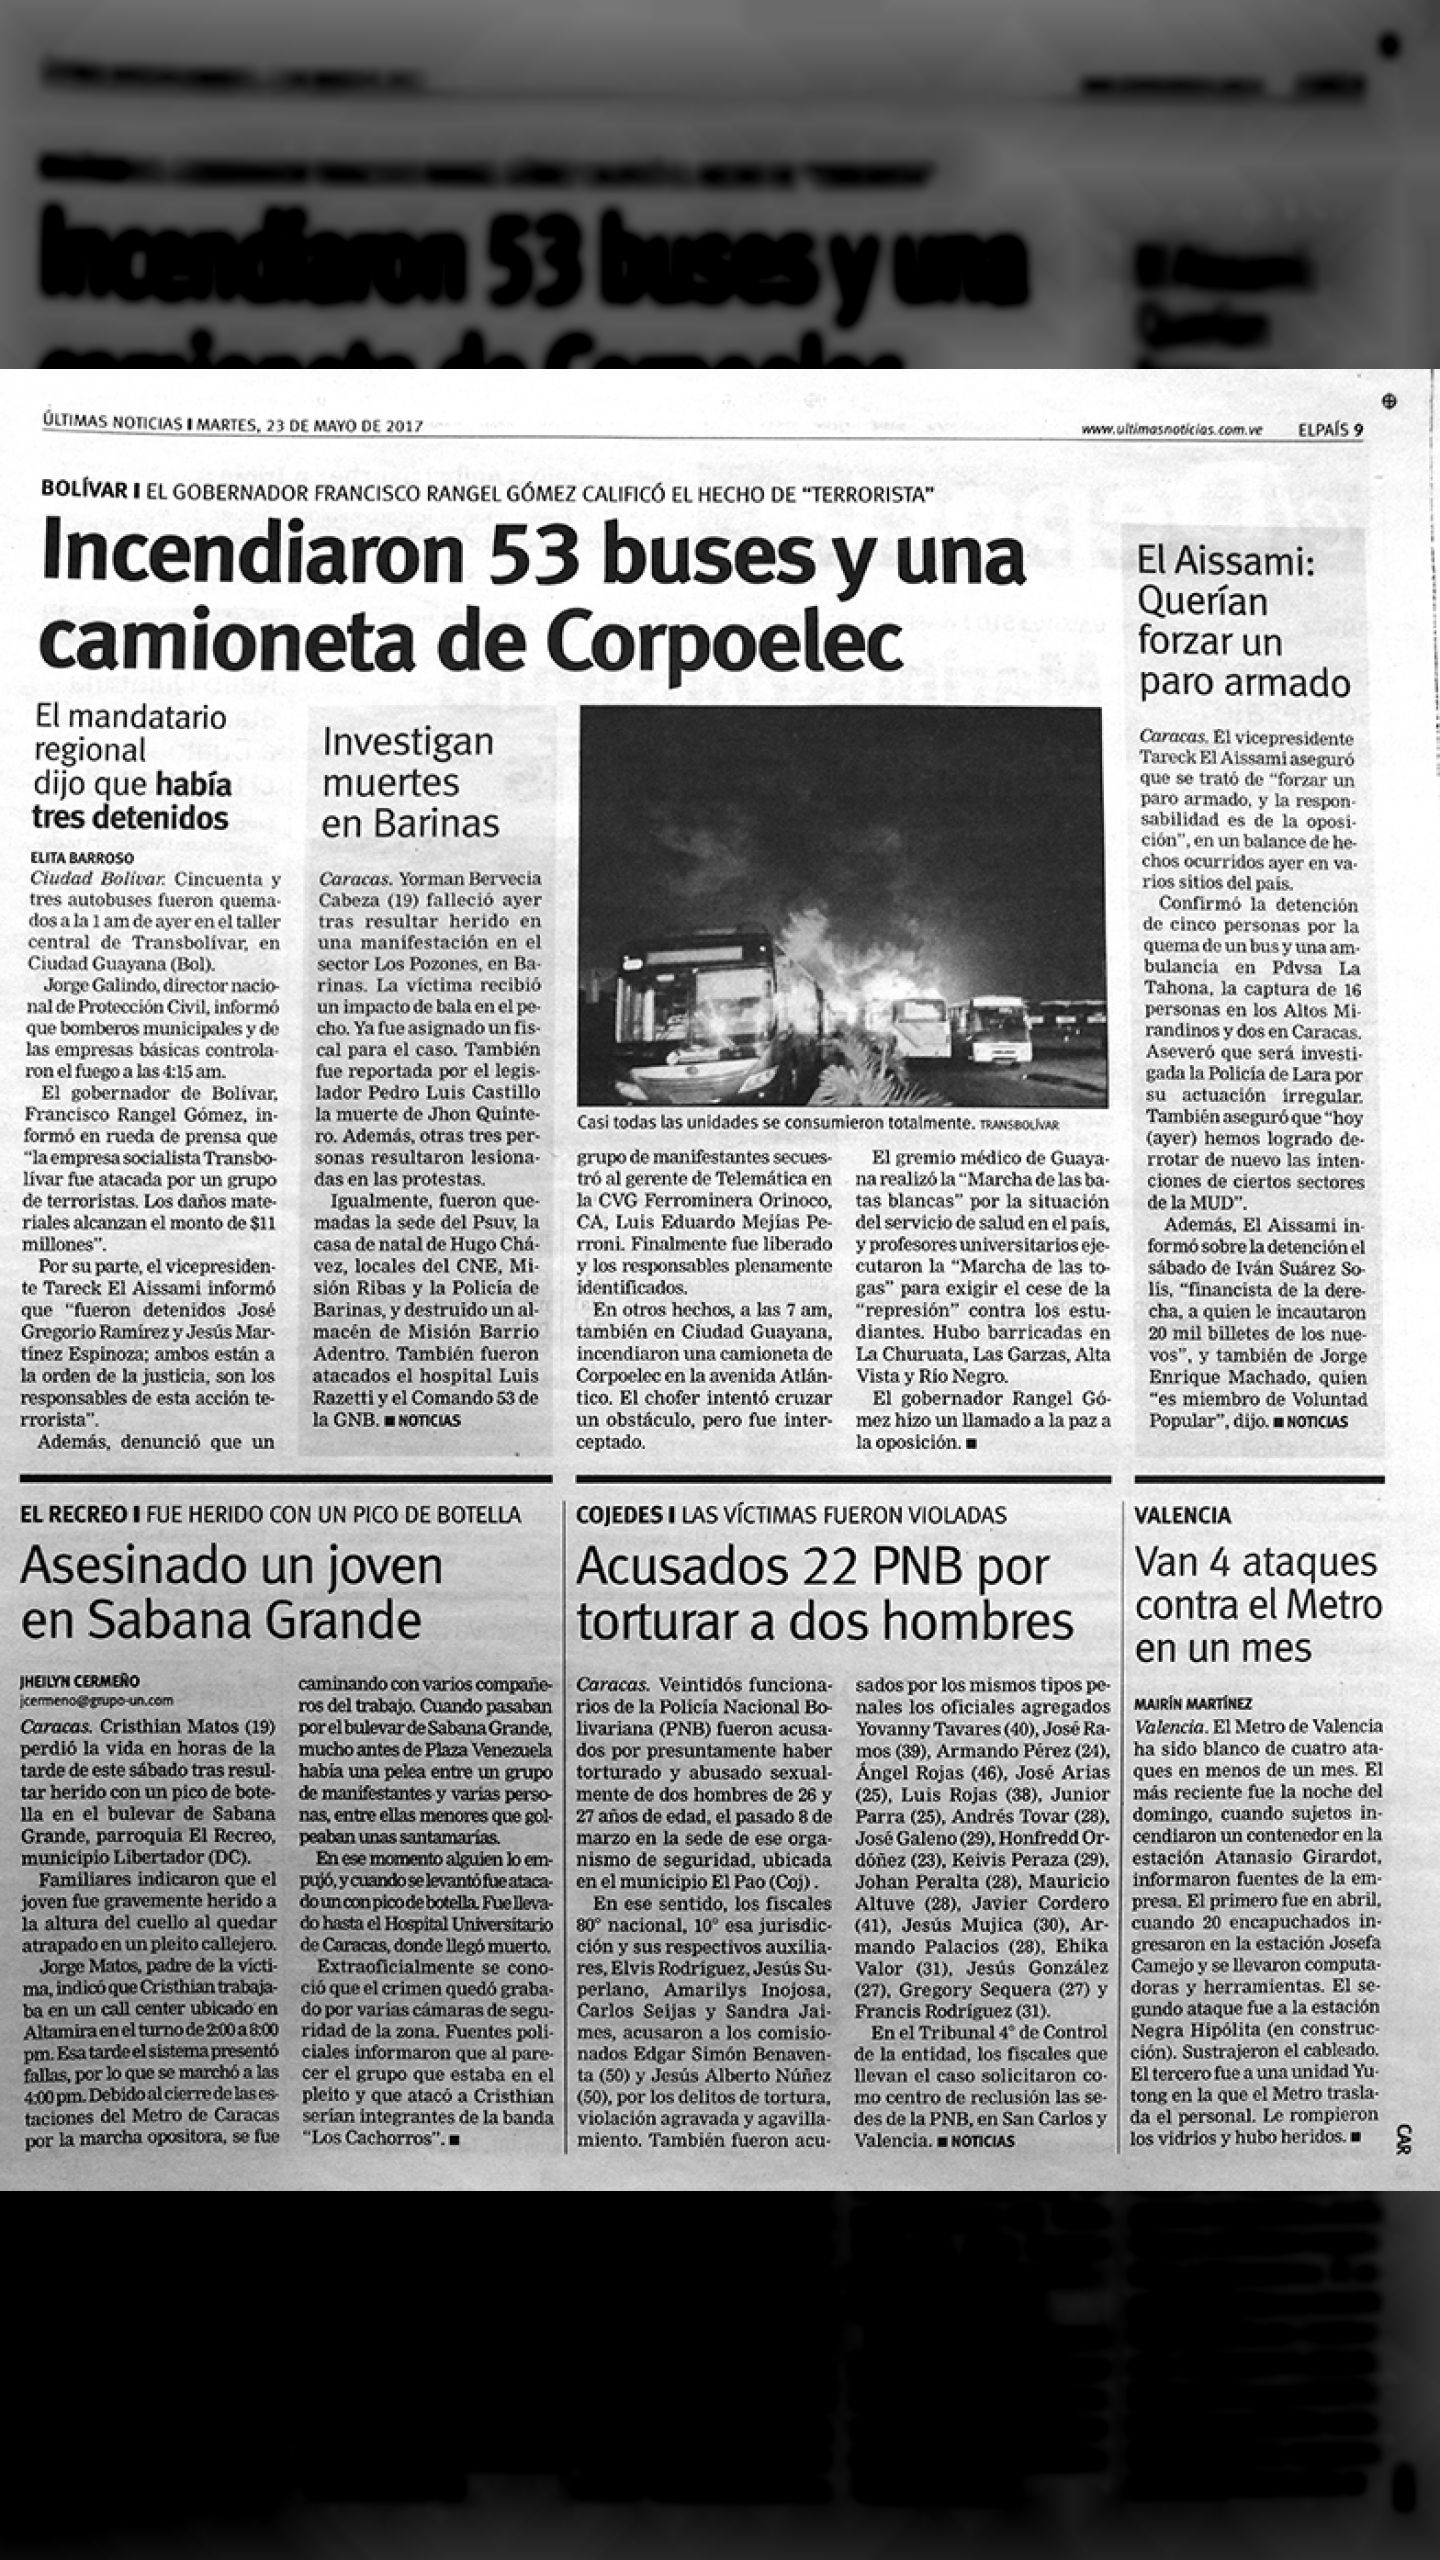 Incendiaron 53 buses y una camioneta de Corpoelec - Guarimbas 2017 (Últimas Noticias, 23 de mayo 2017)